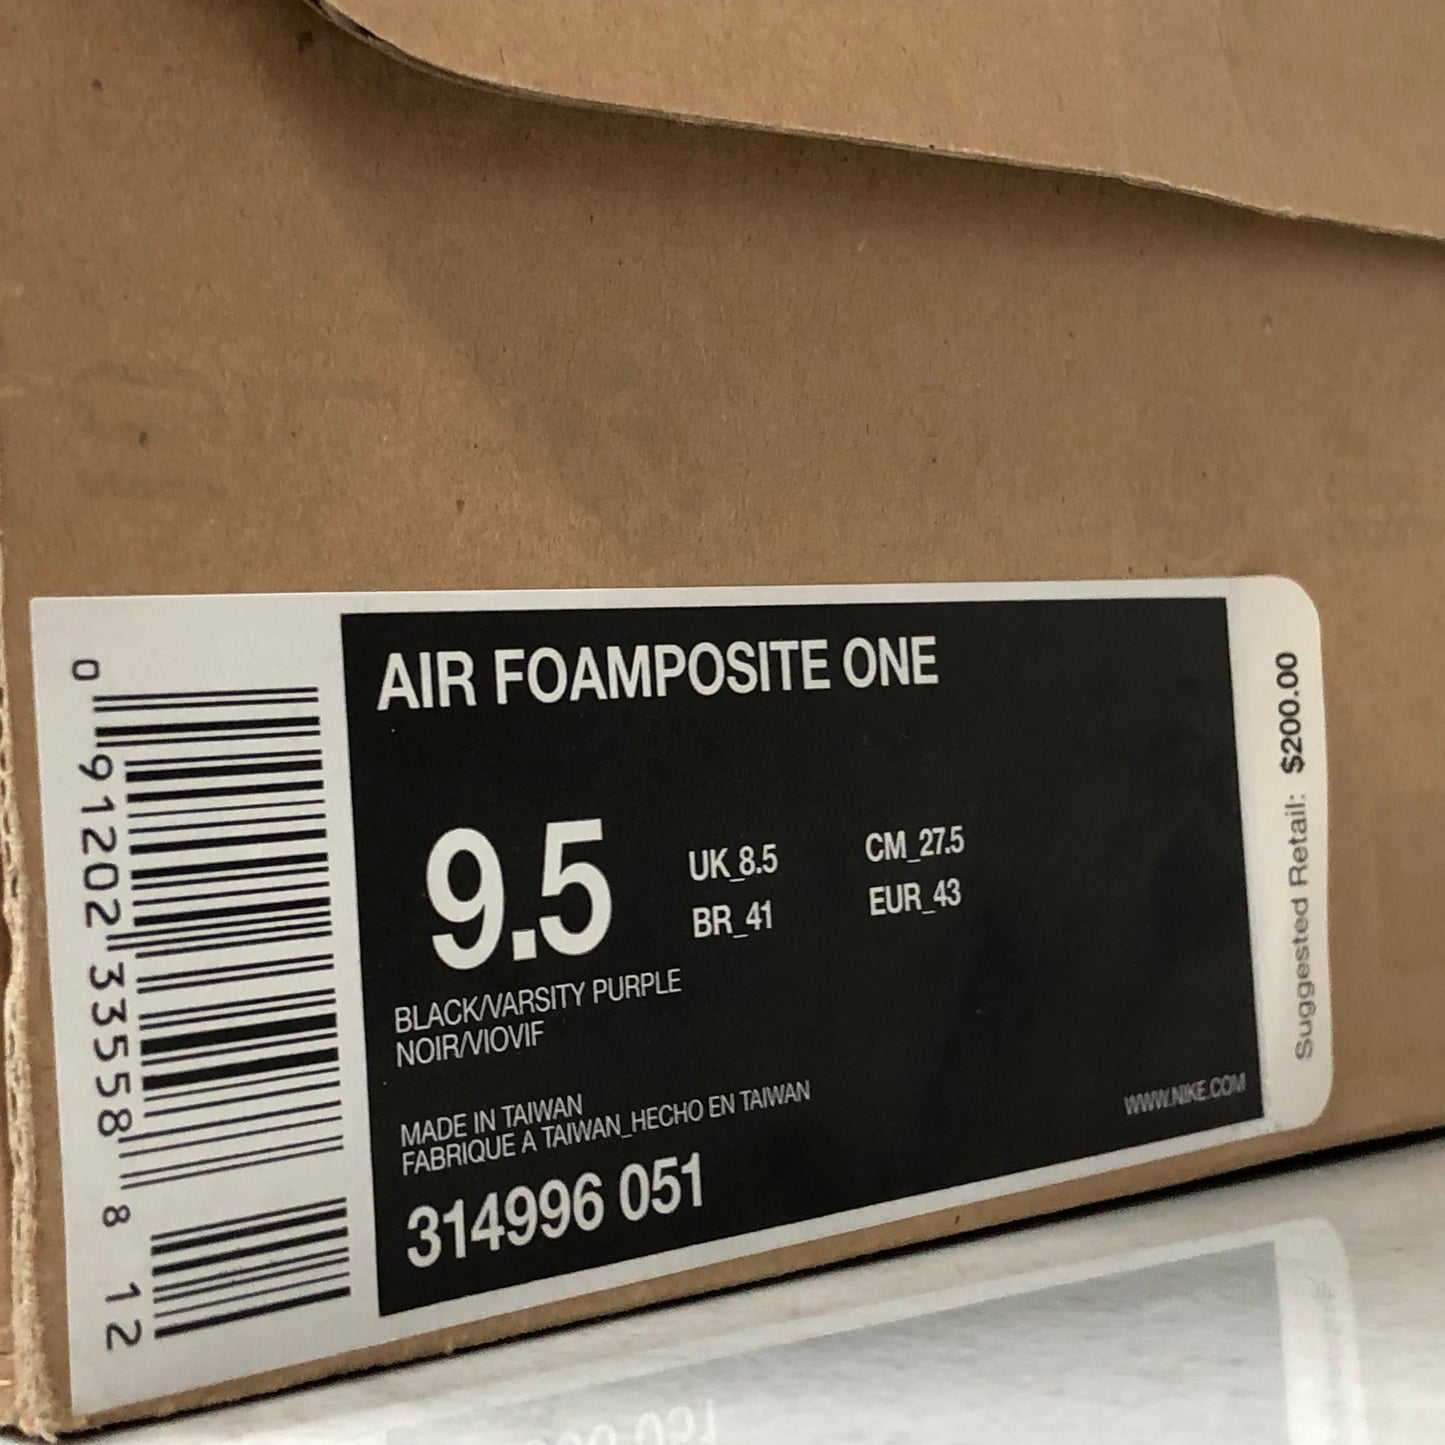 Nike Air Foamposite One Berenjena Talla 9.5 Negro 314996 051